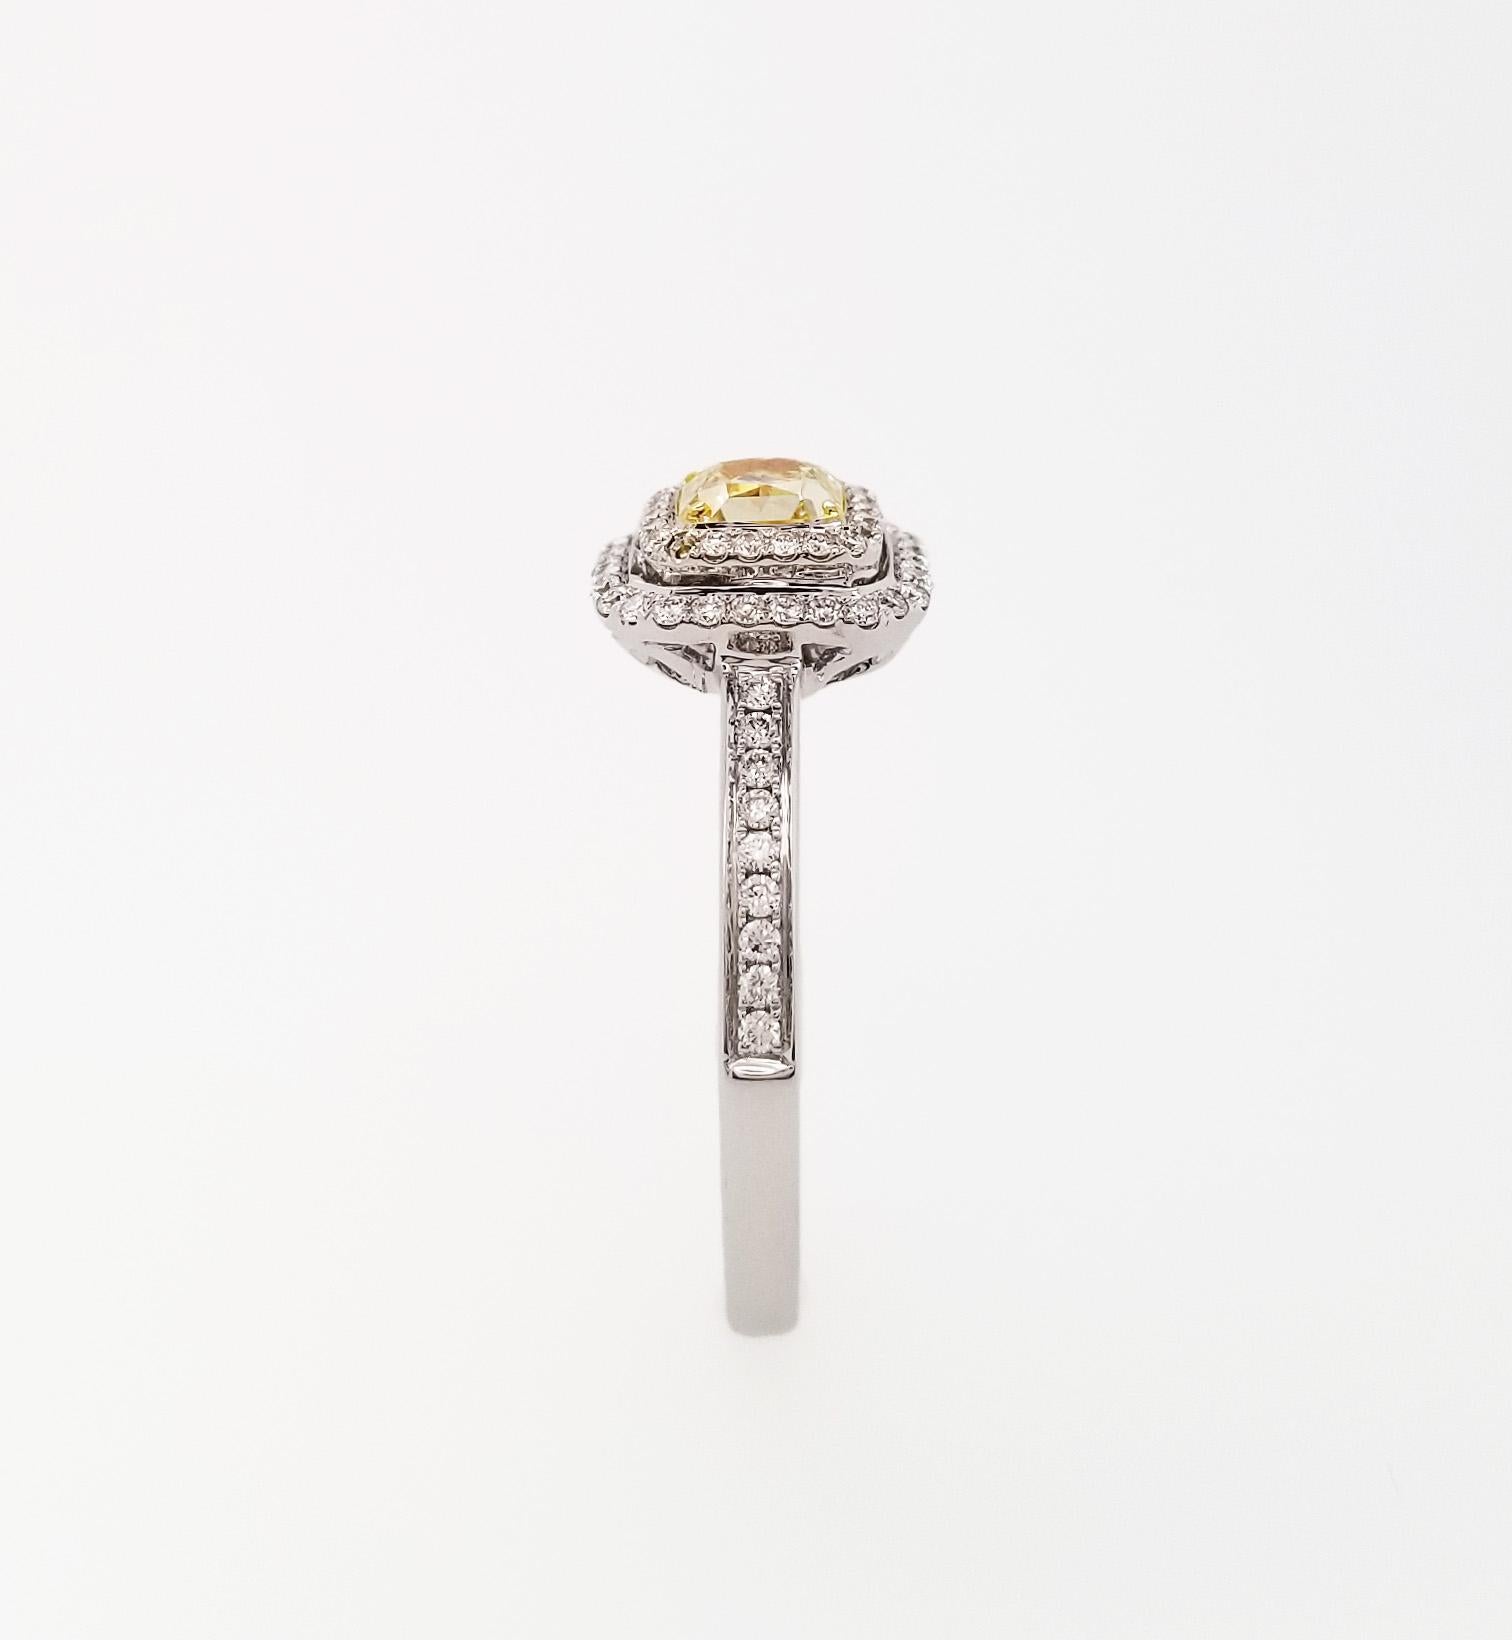 Contemporain Idées cadeaux pour la fête des mères : Scarselli, diamant jaune clair fantaisie de 0,52 carat en vente